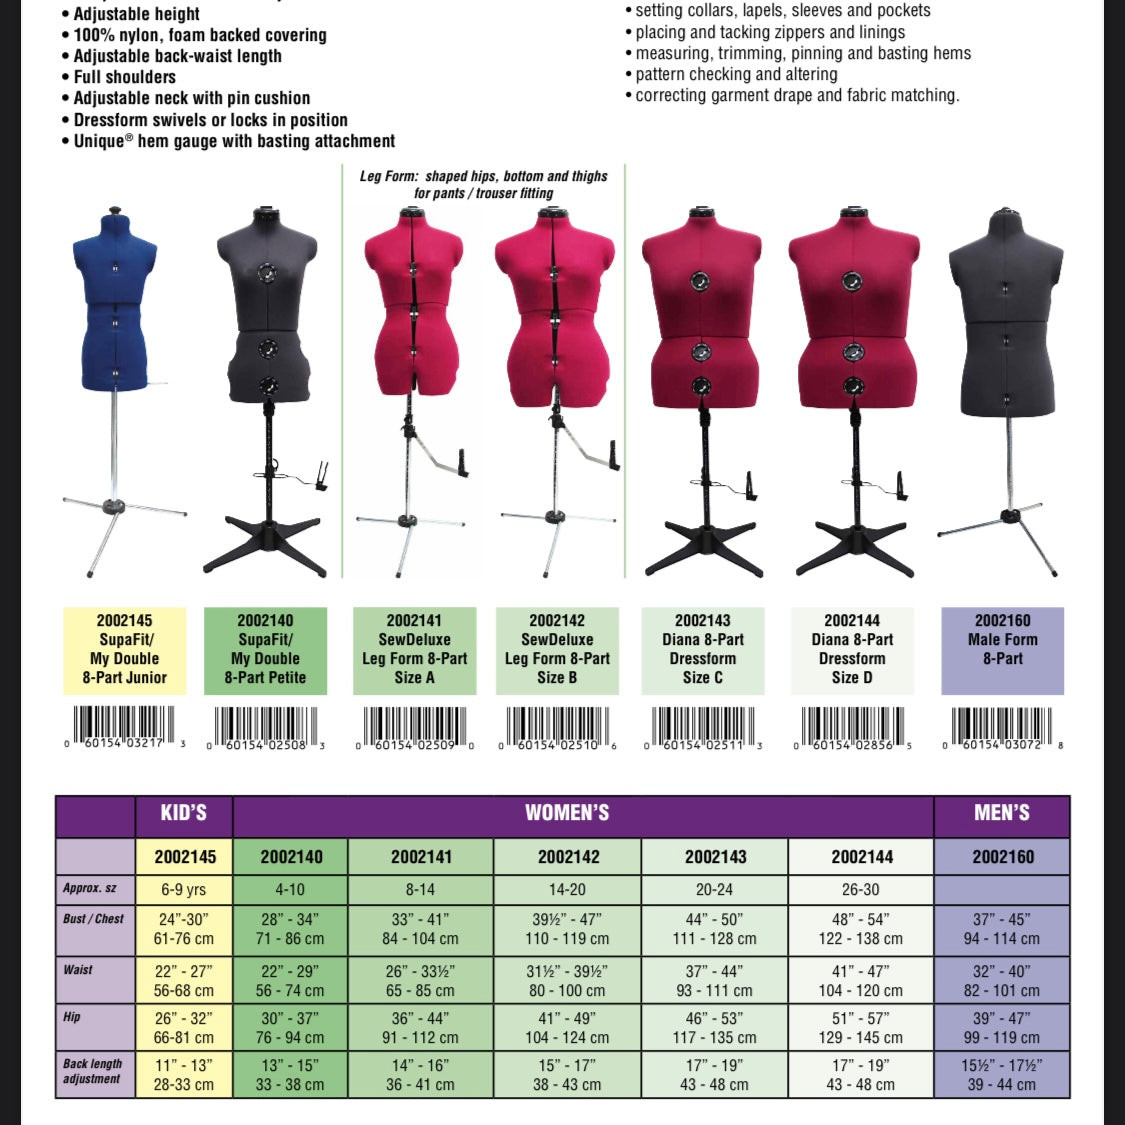 Dressform - Size D - Dress Size 26-30